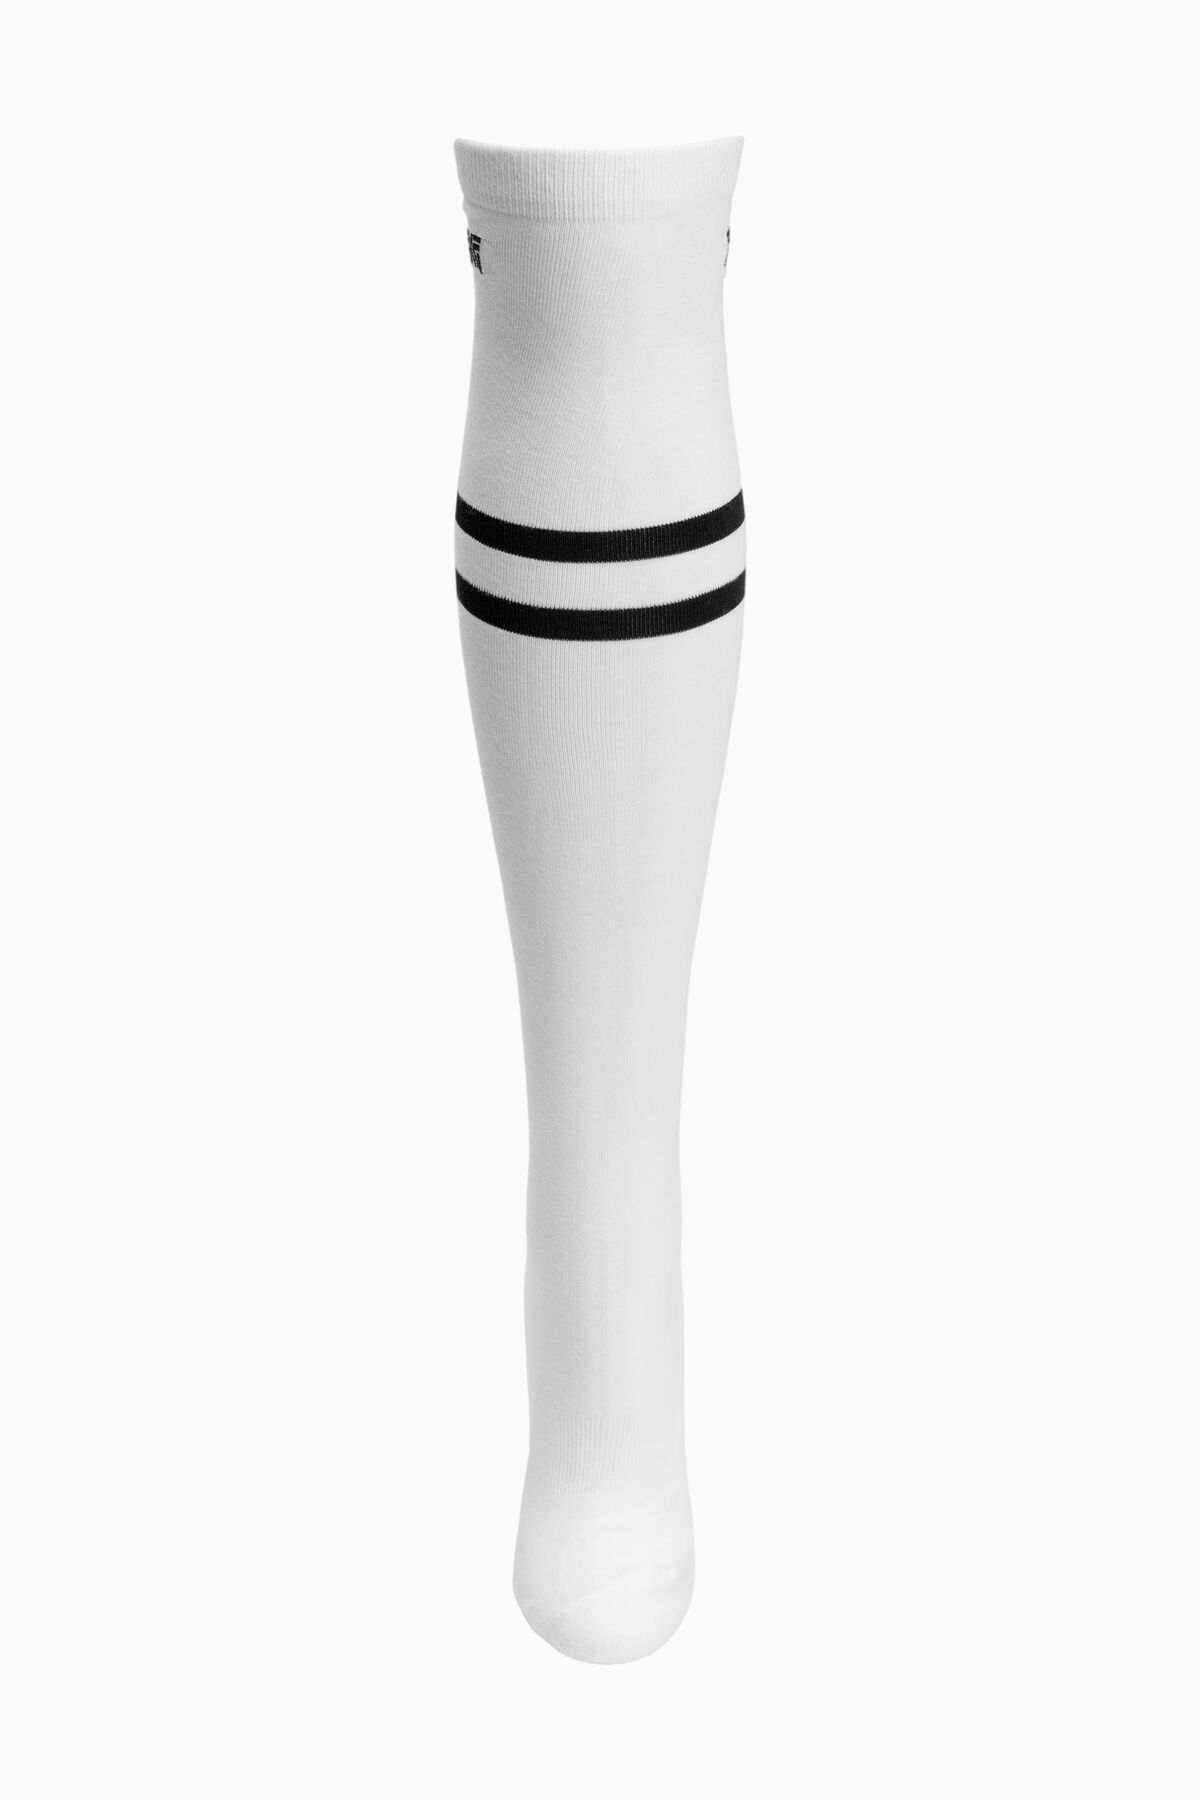 2021 Women's Knee High Socks- White White